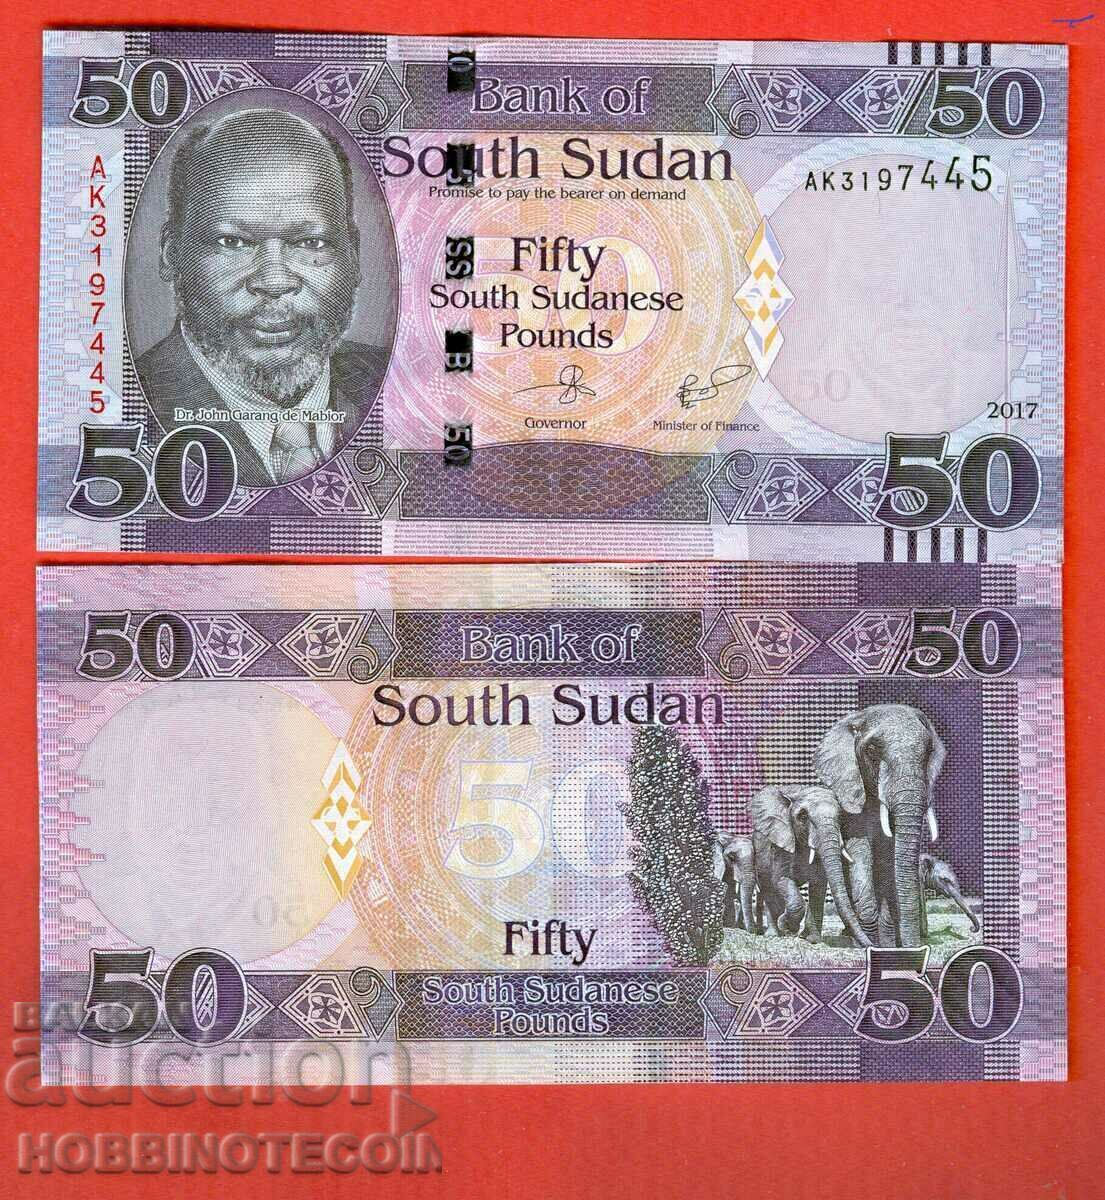 SUDAN DE SUD SUDAN DE SUD 50 număr - numărul 2017 NOU UNC